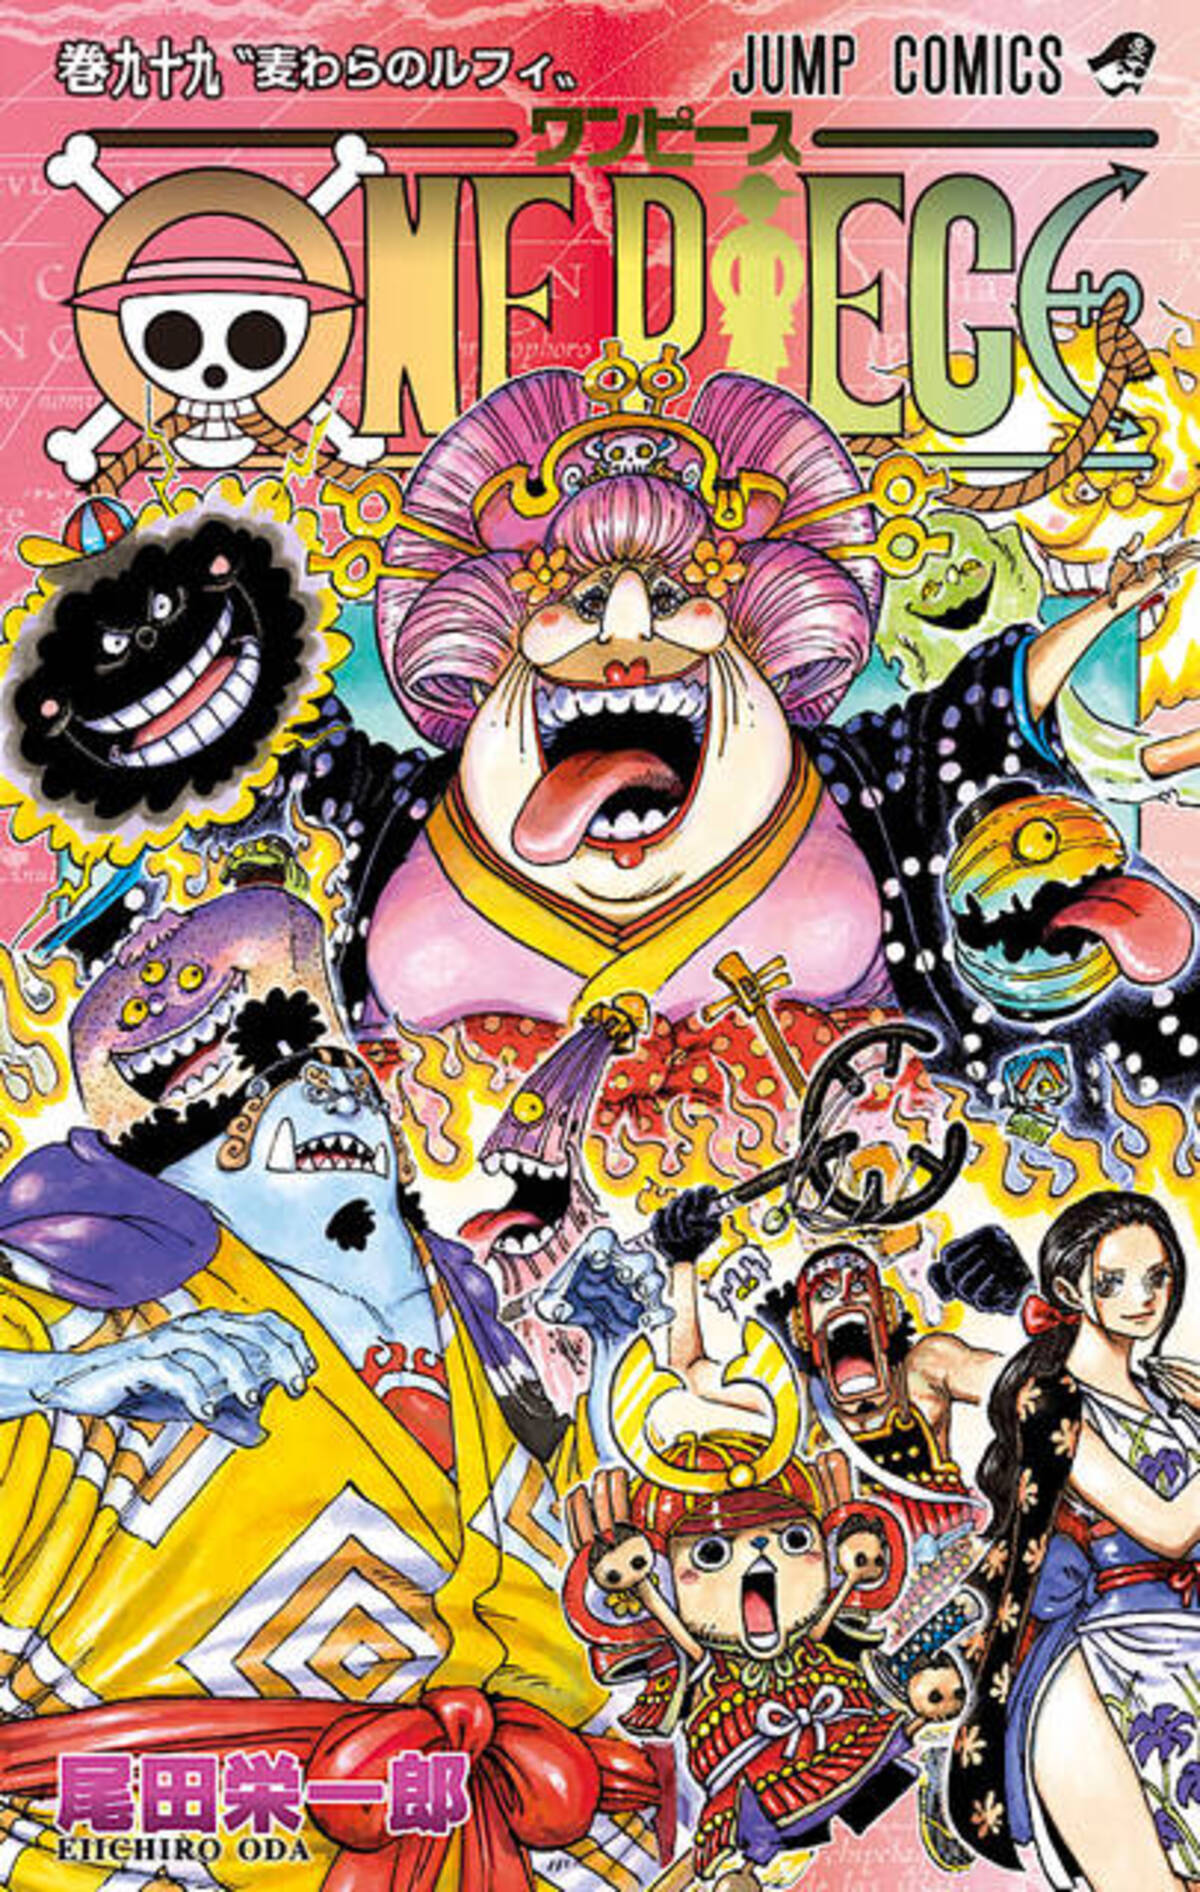 ルフィvsカイドウ 新宿で激闘 One Piece 99巻発売記念スペシャルムービー公開 21年6月4日 エキサイトニュース 2 2